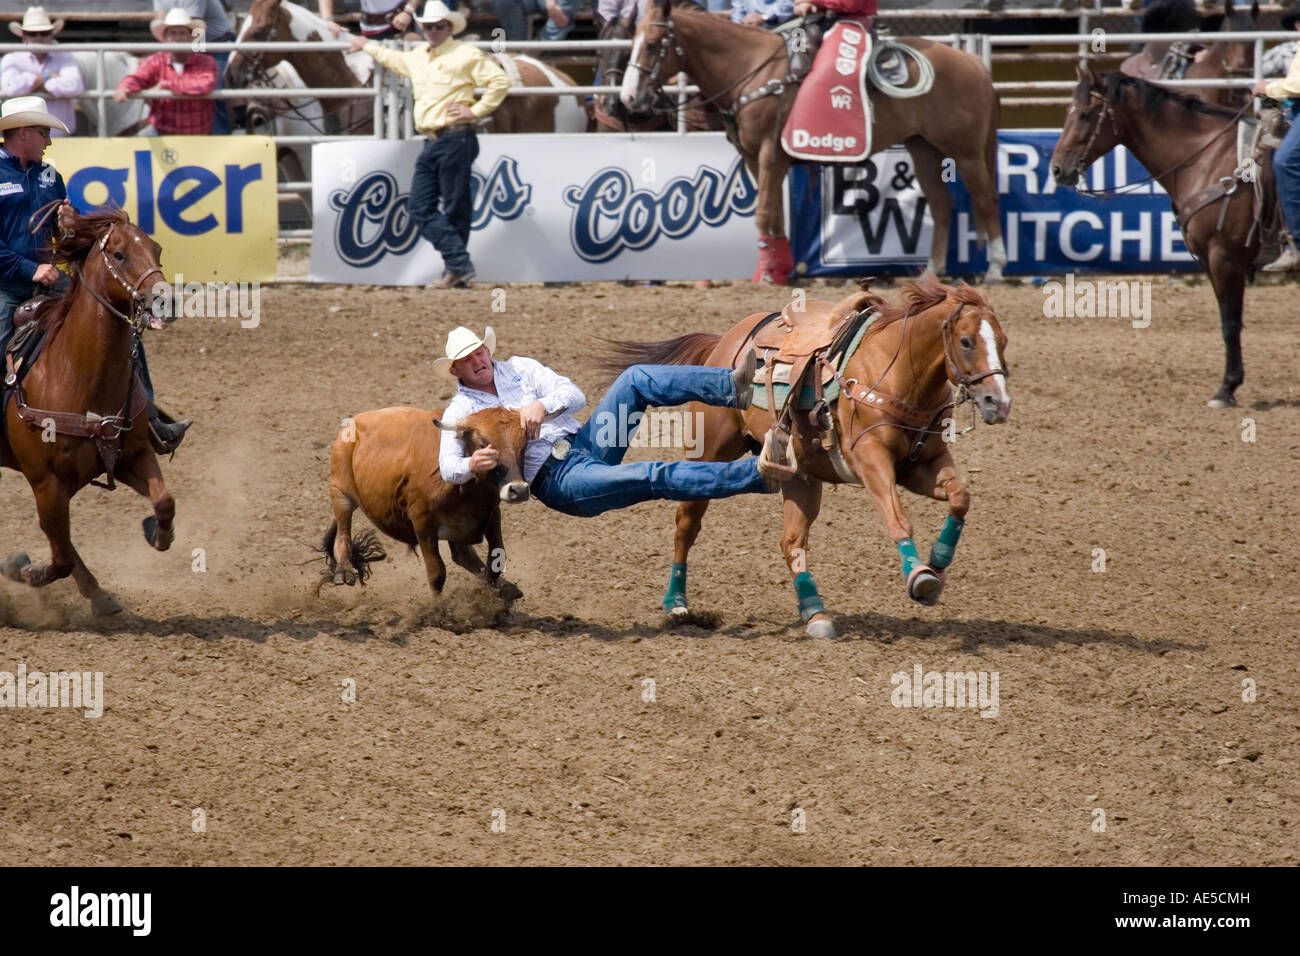 Cowboy Schiebetüren vom galoppierenden Pferd, Kalb bei den Hörnern in der Luft in Rodeo Steer wrestling Wettbewerb zu greifen Stockfoto